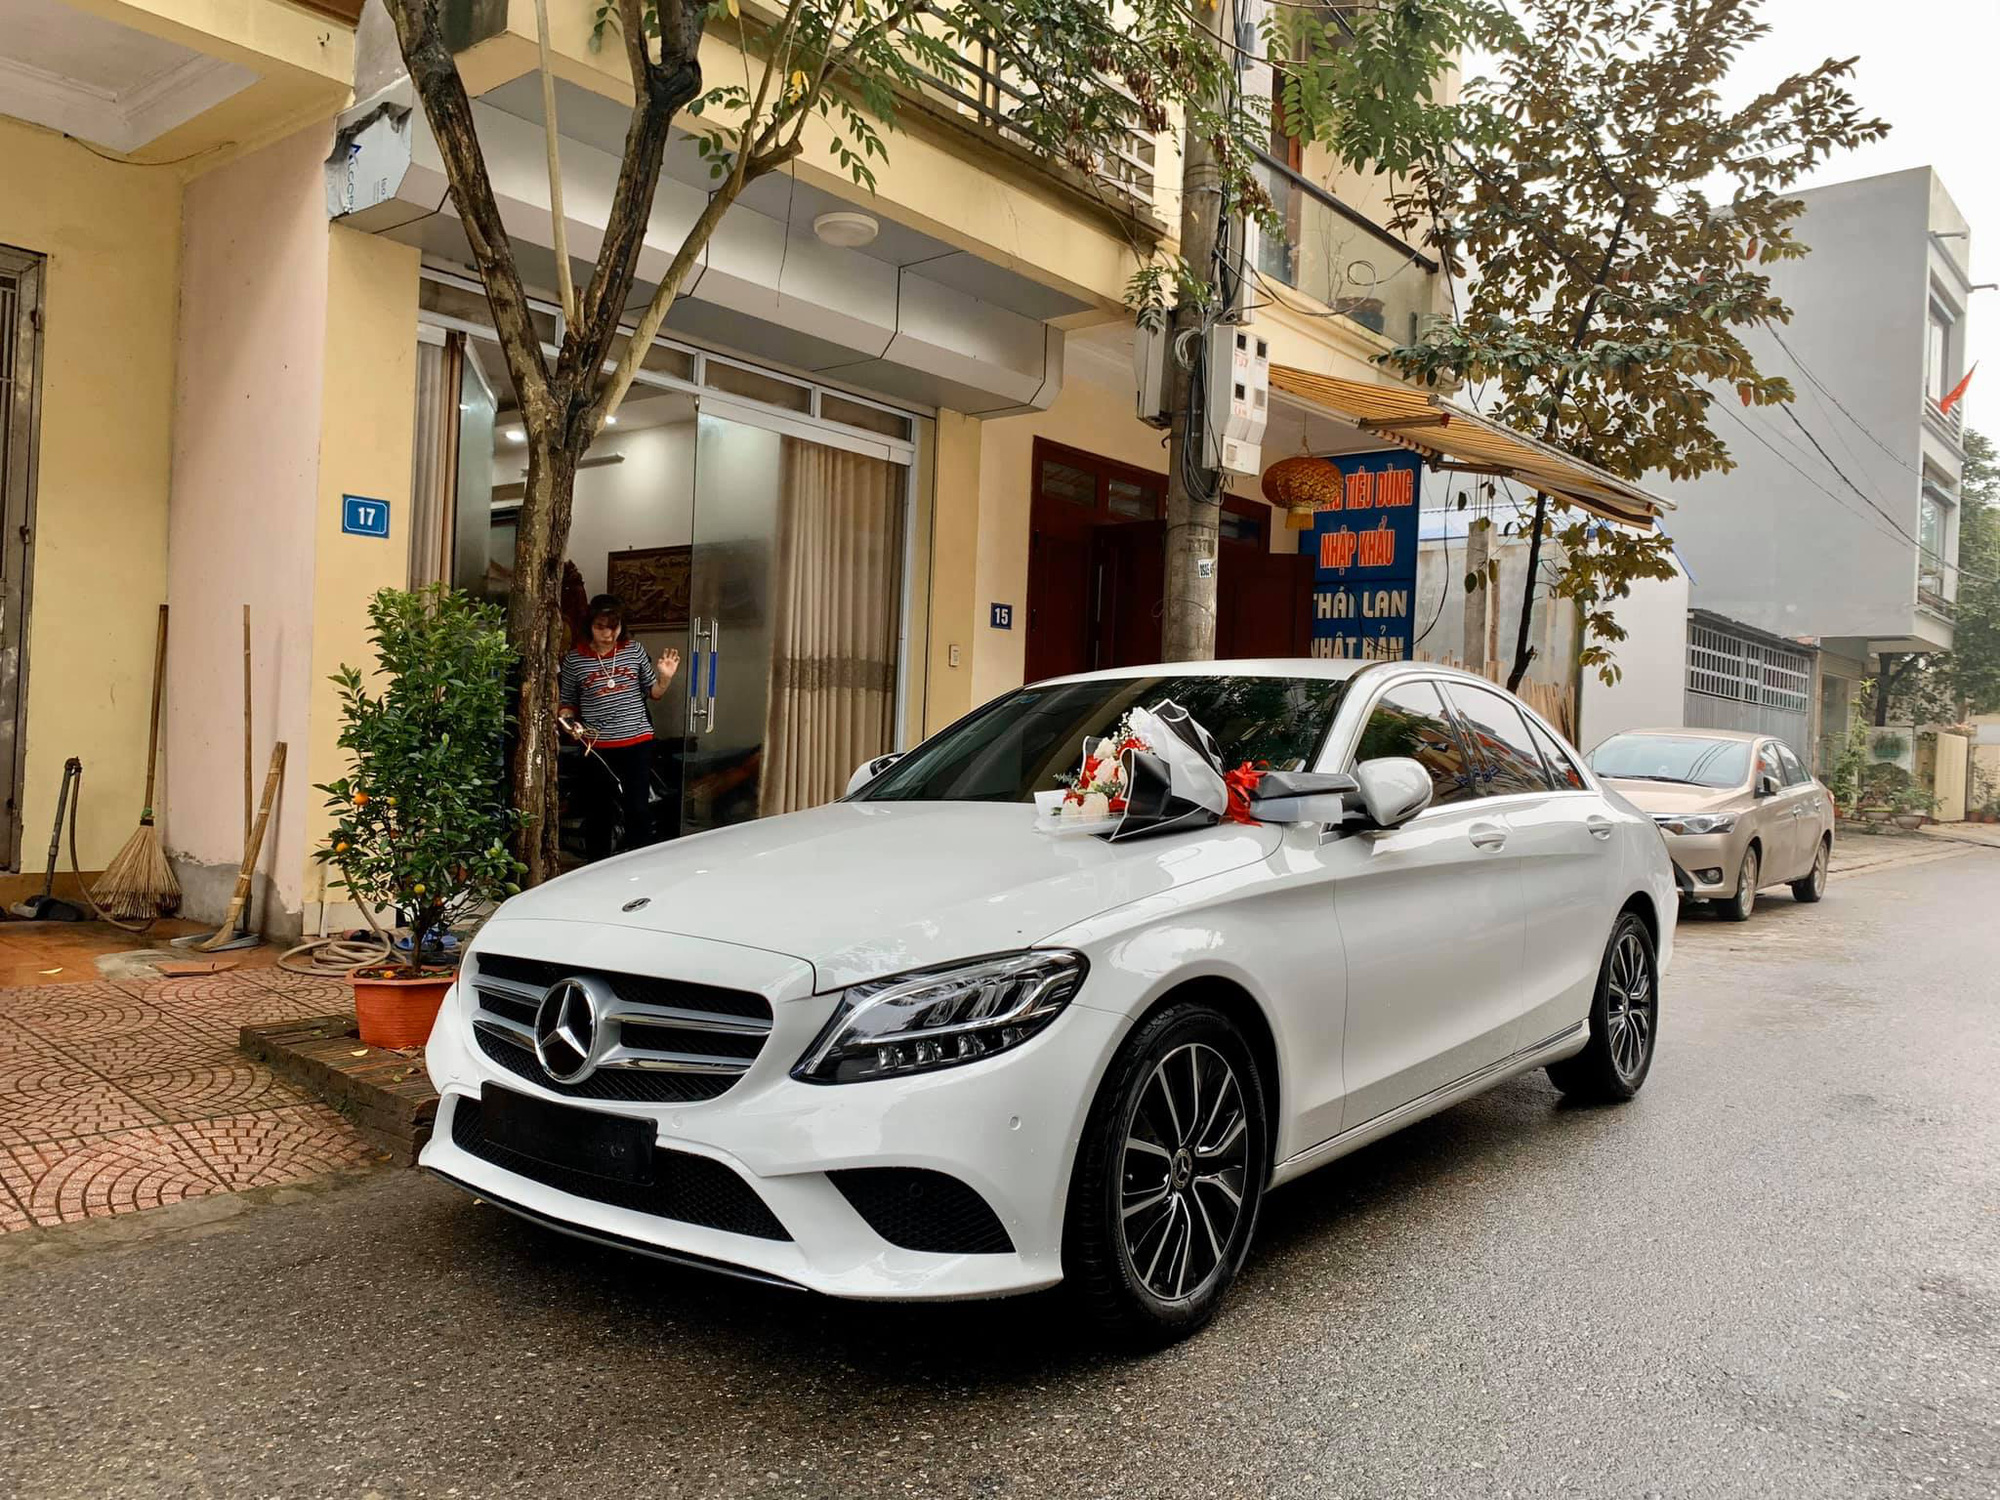 Chồng nhà người ta: Mua Mercedes-Benz C 200 gần 1,5 tỷ tặng vợ dịp Valentine, nhất định chọn màu vợ thích và ‘ship’ đến tận cửa nhà để tạo bất ngờ - Ảnh 1.